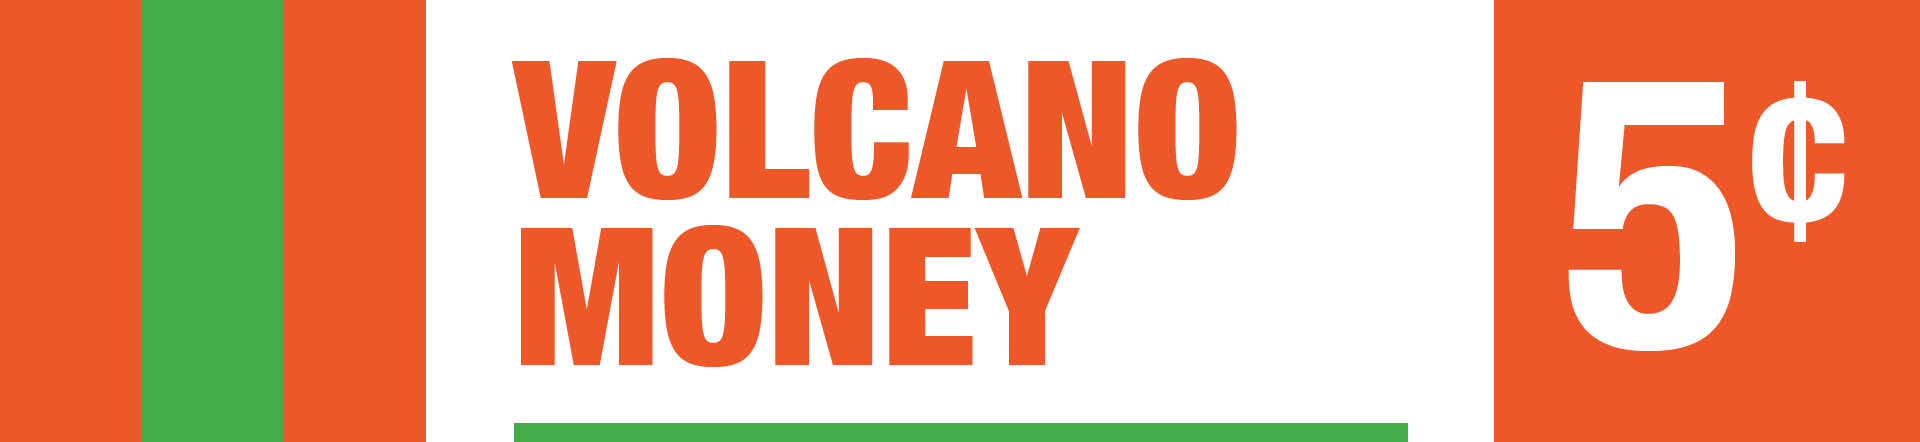 Volcano Money